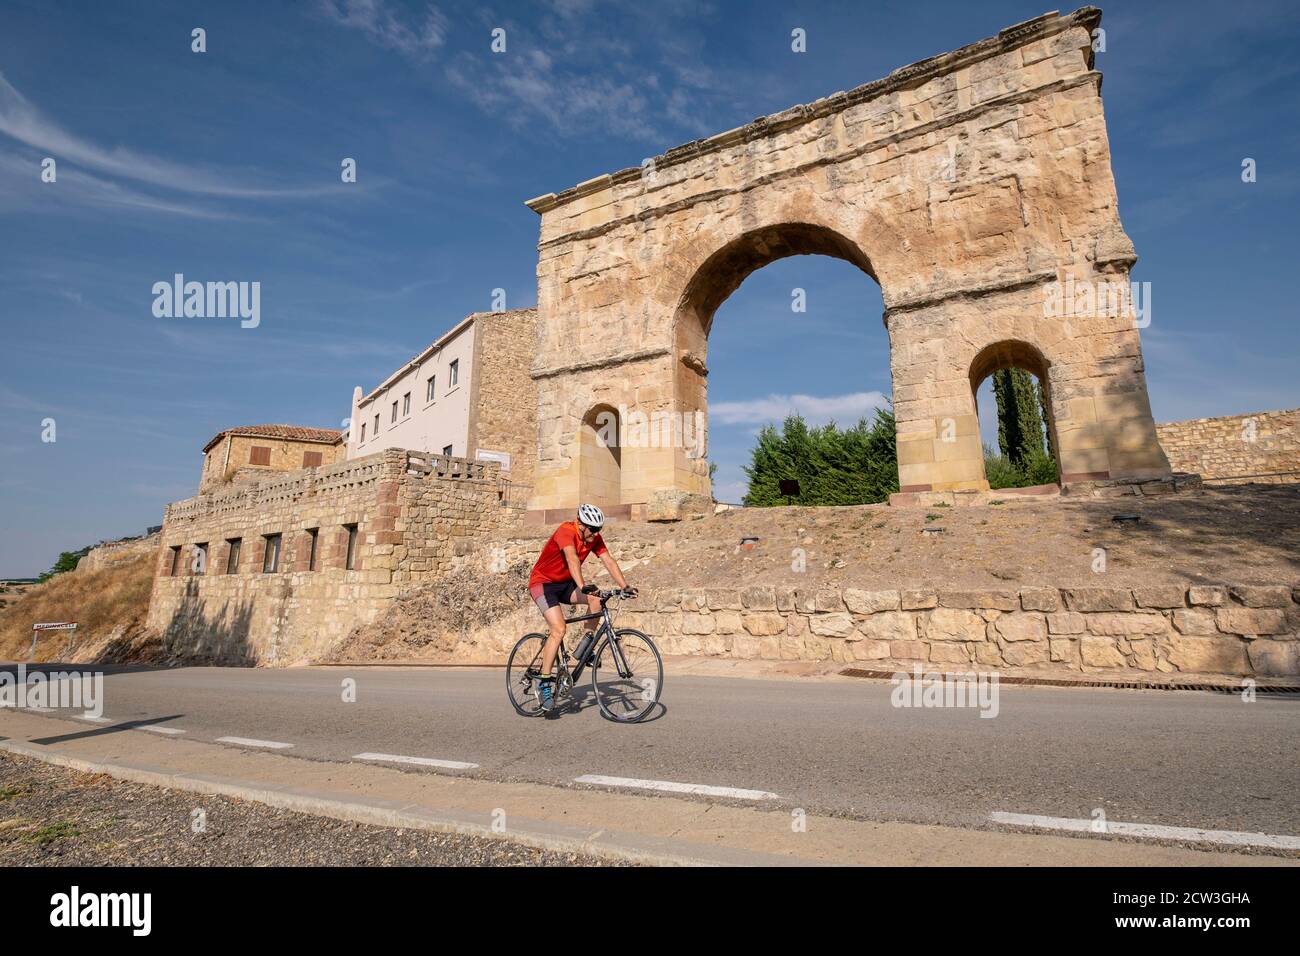 arco di triunfo romano, siglo i a. C., Medinaceli, Soria, comunidad autónoma de Castilla y León, Spagna, Europa Foto Stock